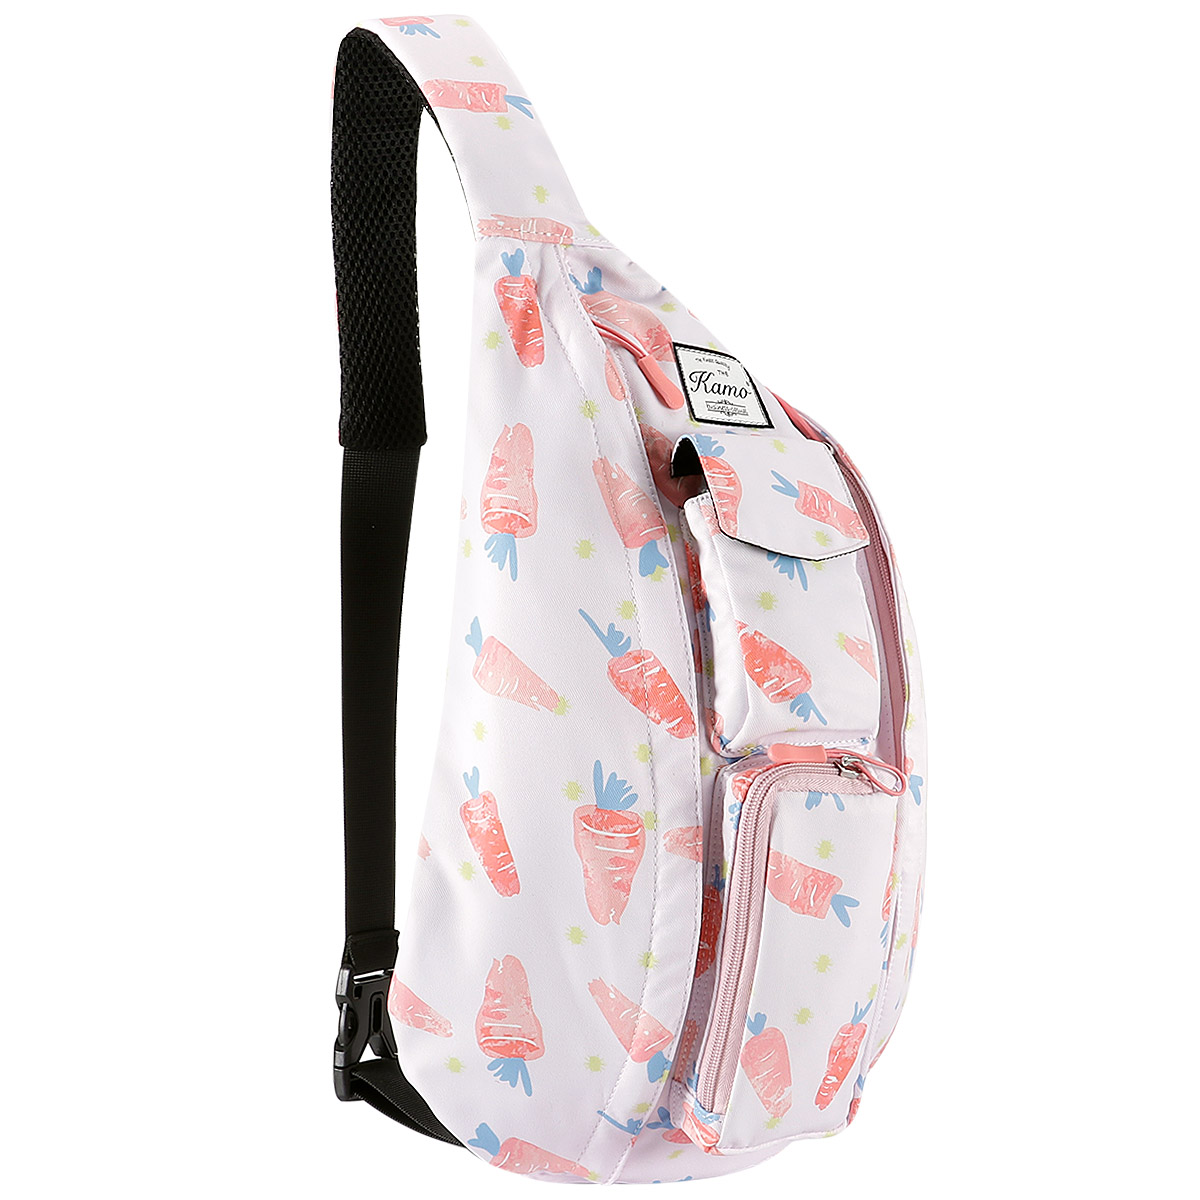 Sling Backpack - Rope Bag Crossbody Backpack Travel Multipurpose Daypacks for Men Women Lady Girl Teens - image 1 of 3